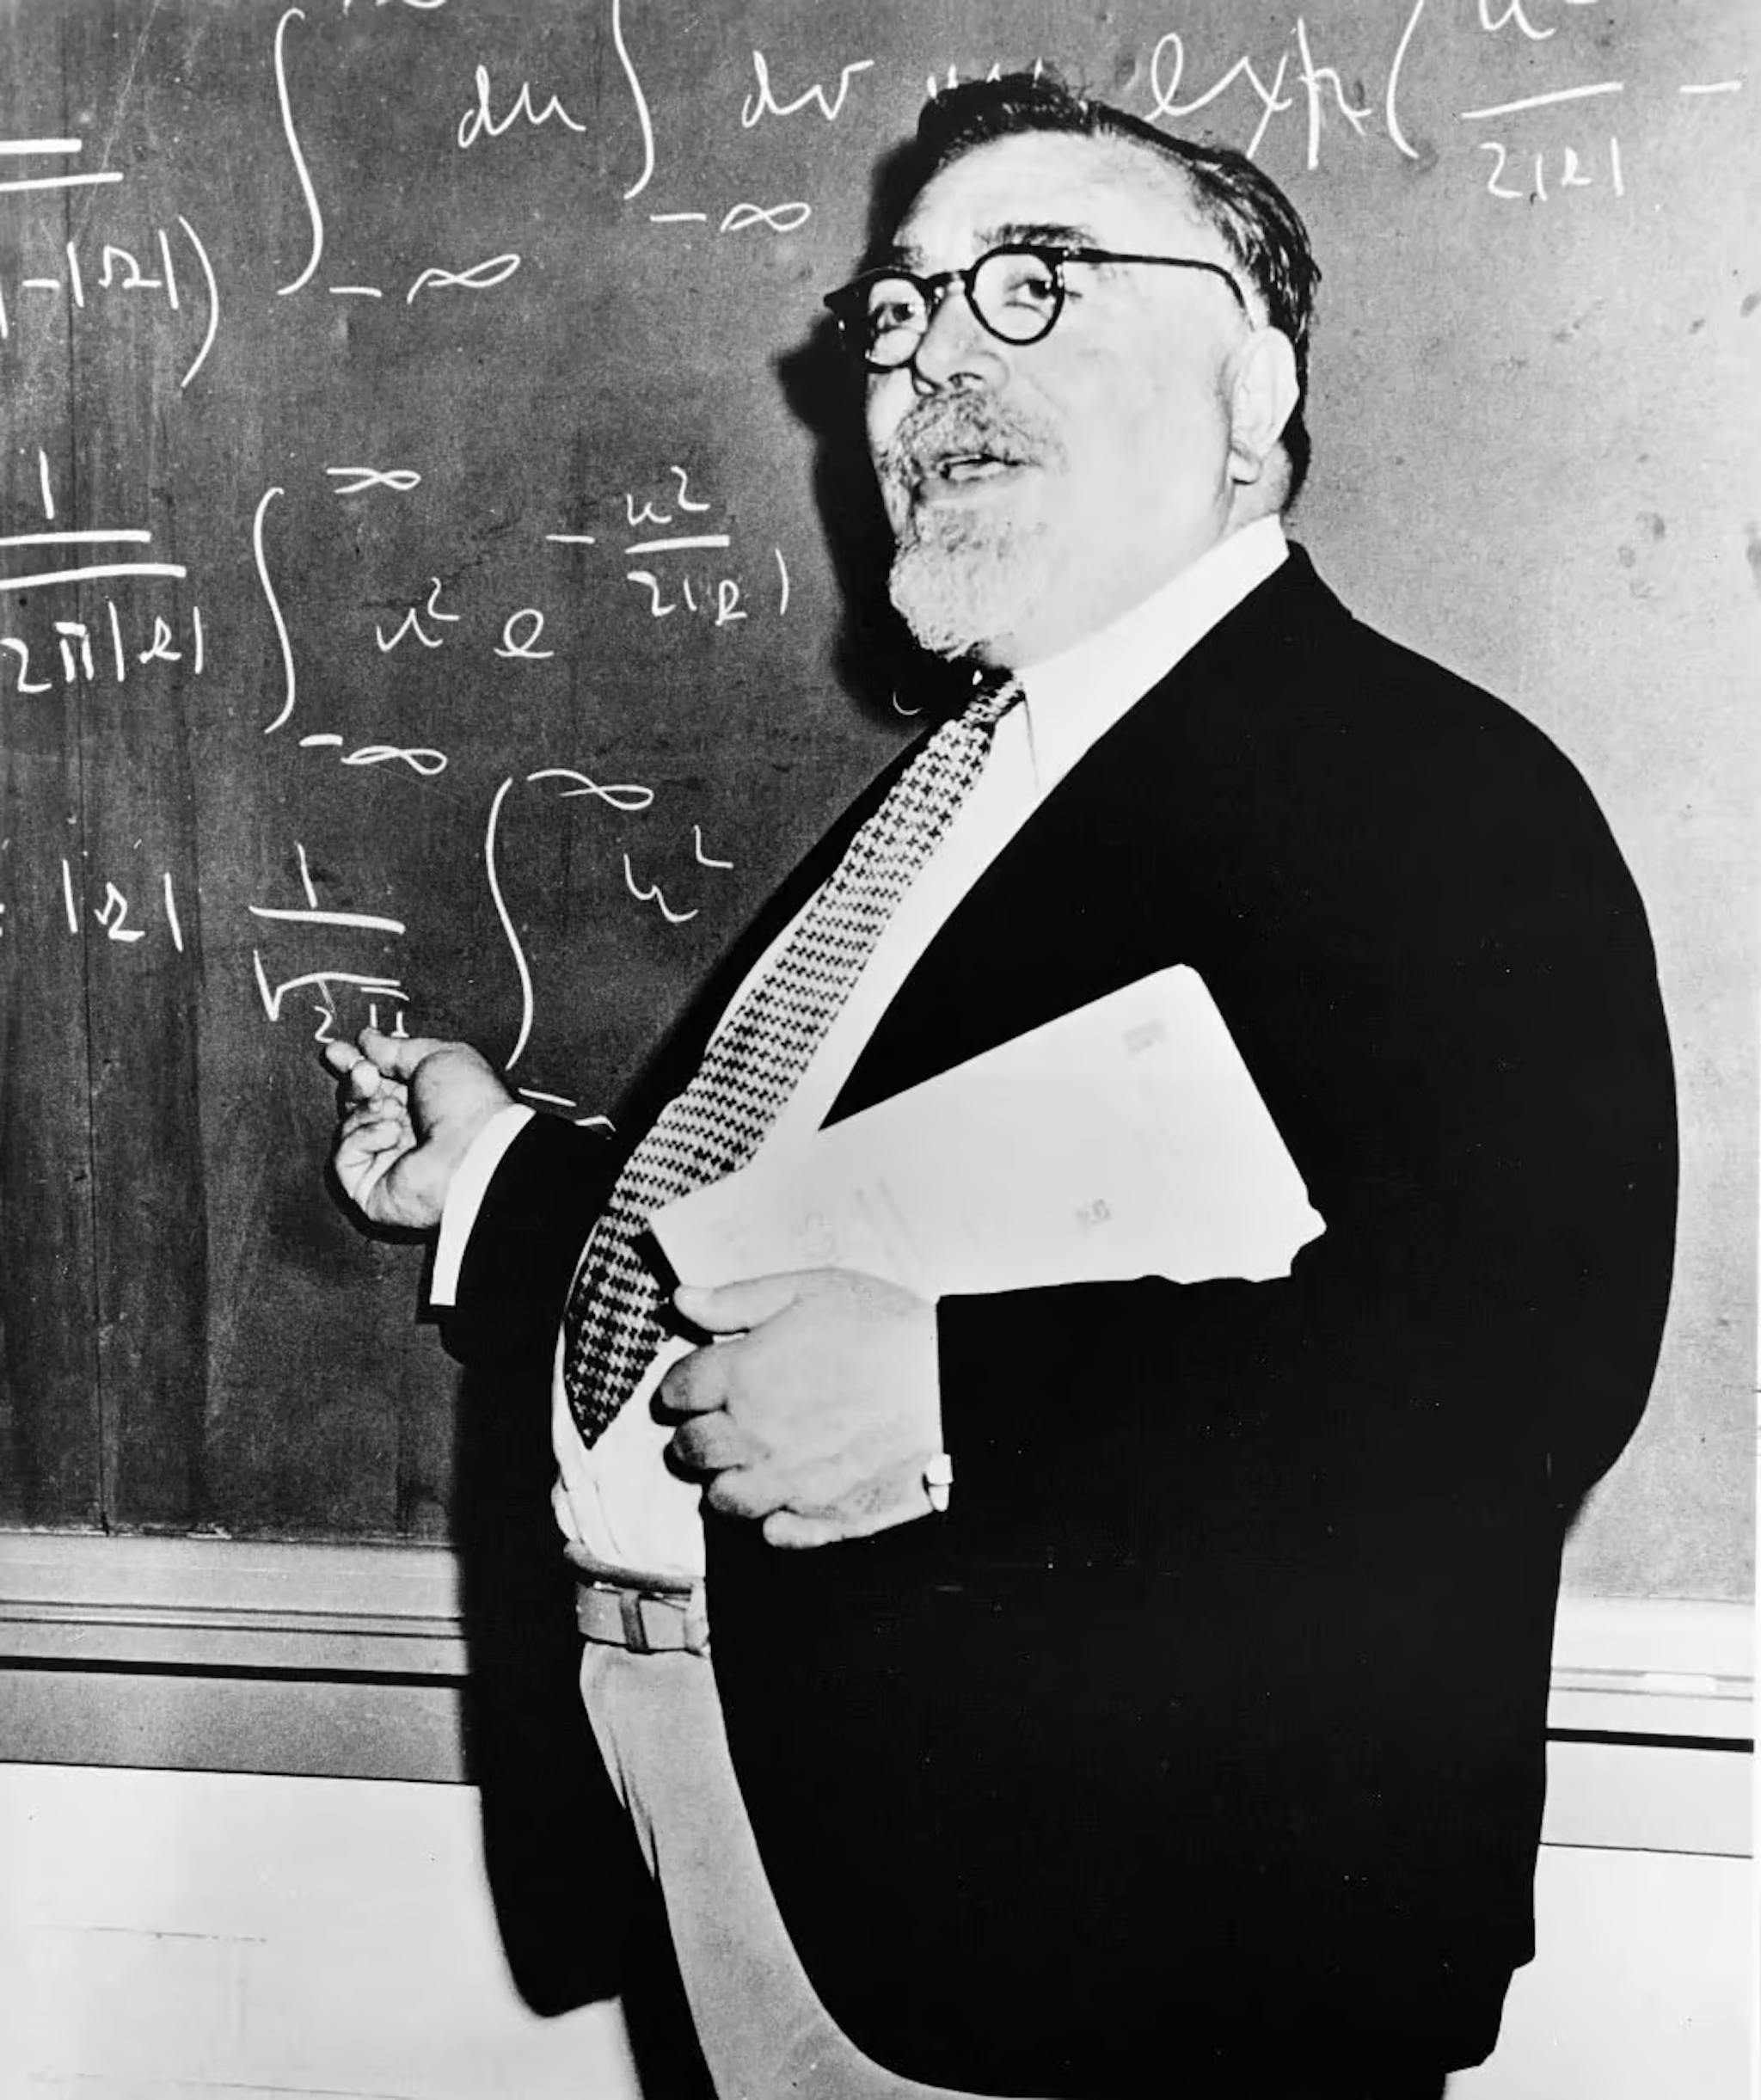 Norbert Wiener (1894-1964) 对随机过程、电子工程和控制系统做出了重大贡献。他创立了控制论，并提出反馈机制会导致智能行为的理论，为现代人工智能奠定了基础。